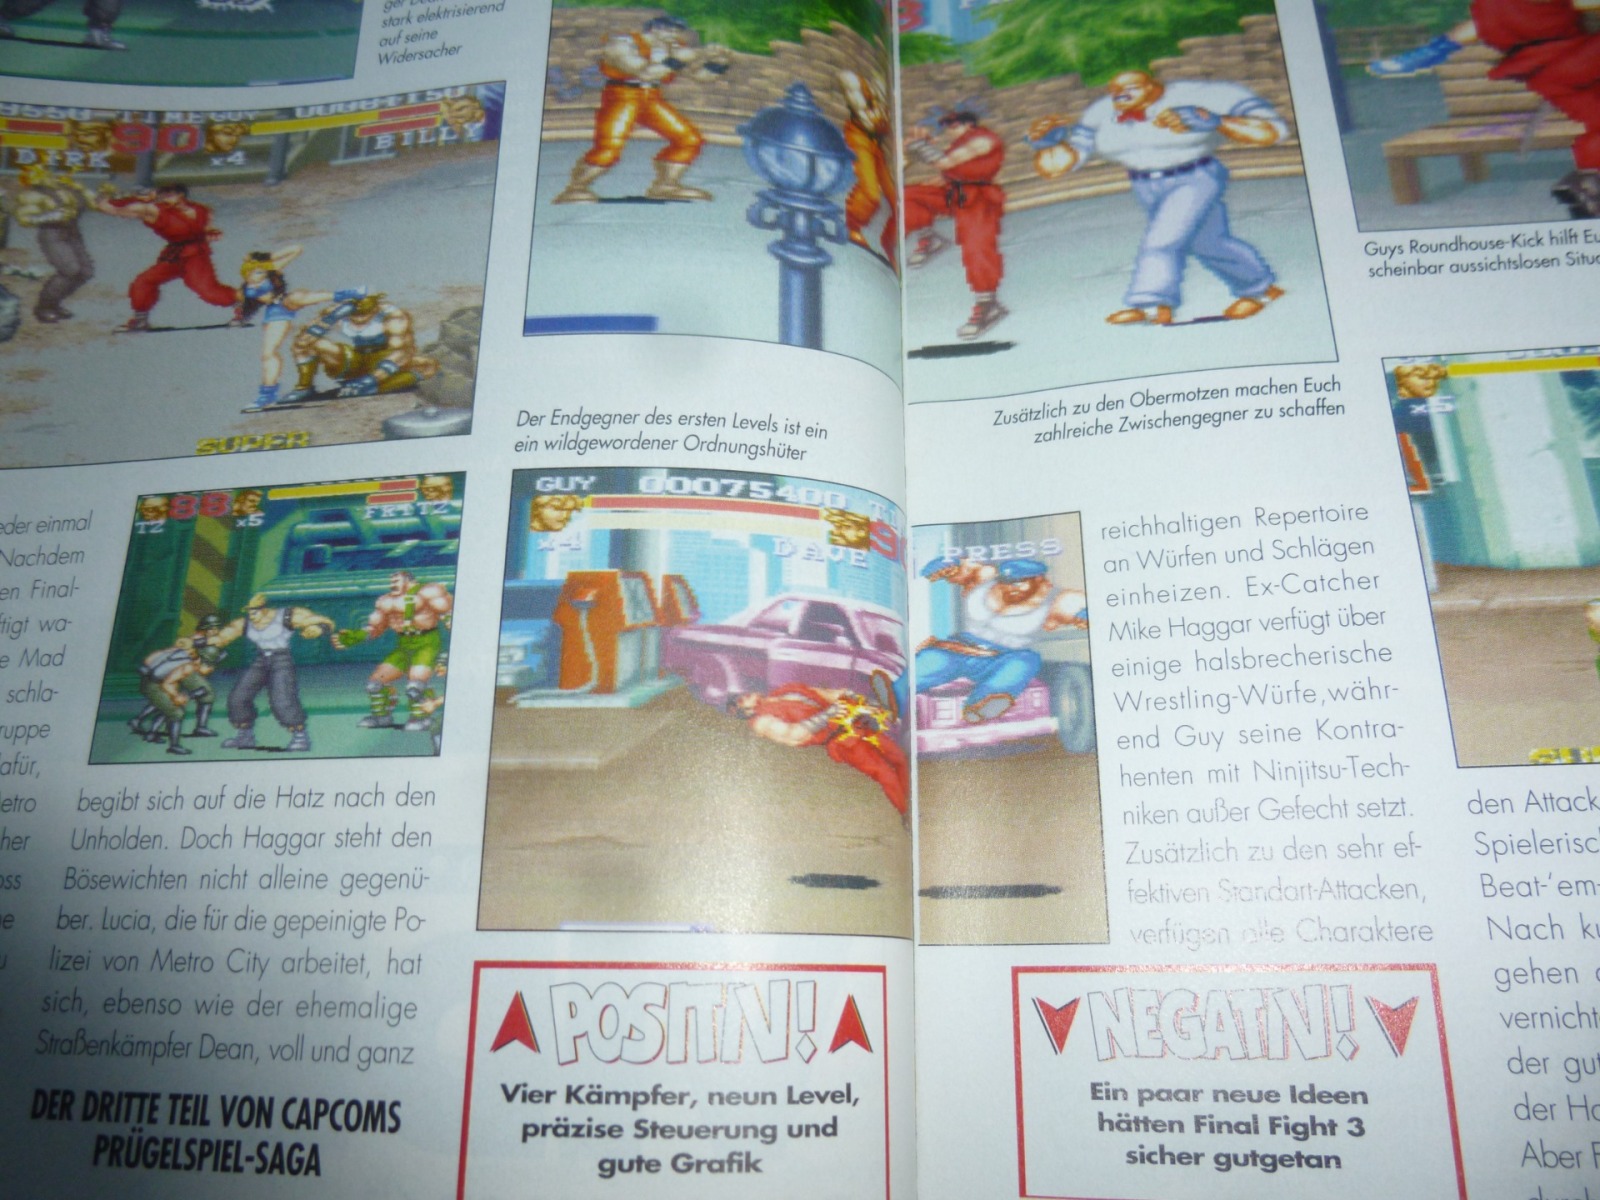 TOTAL Das unabhängige Magazin - 100 Nintendo - Ausgabe 4/96 1996 10